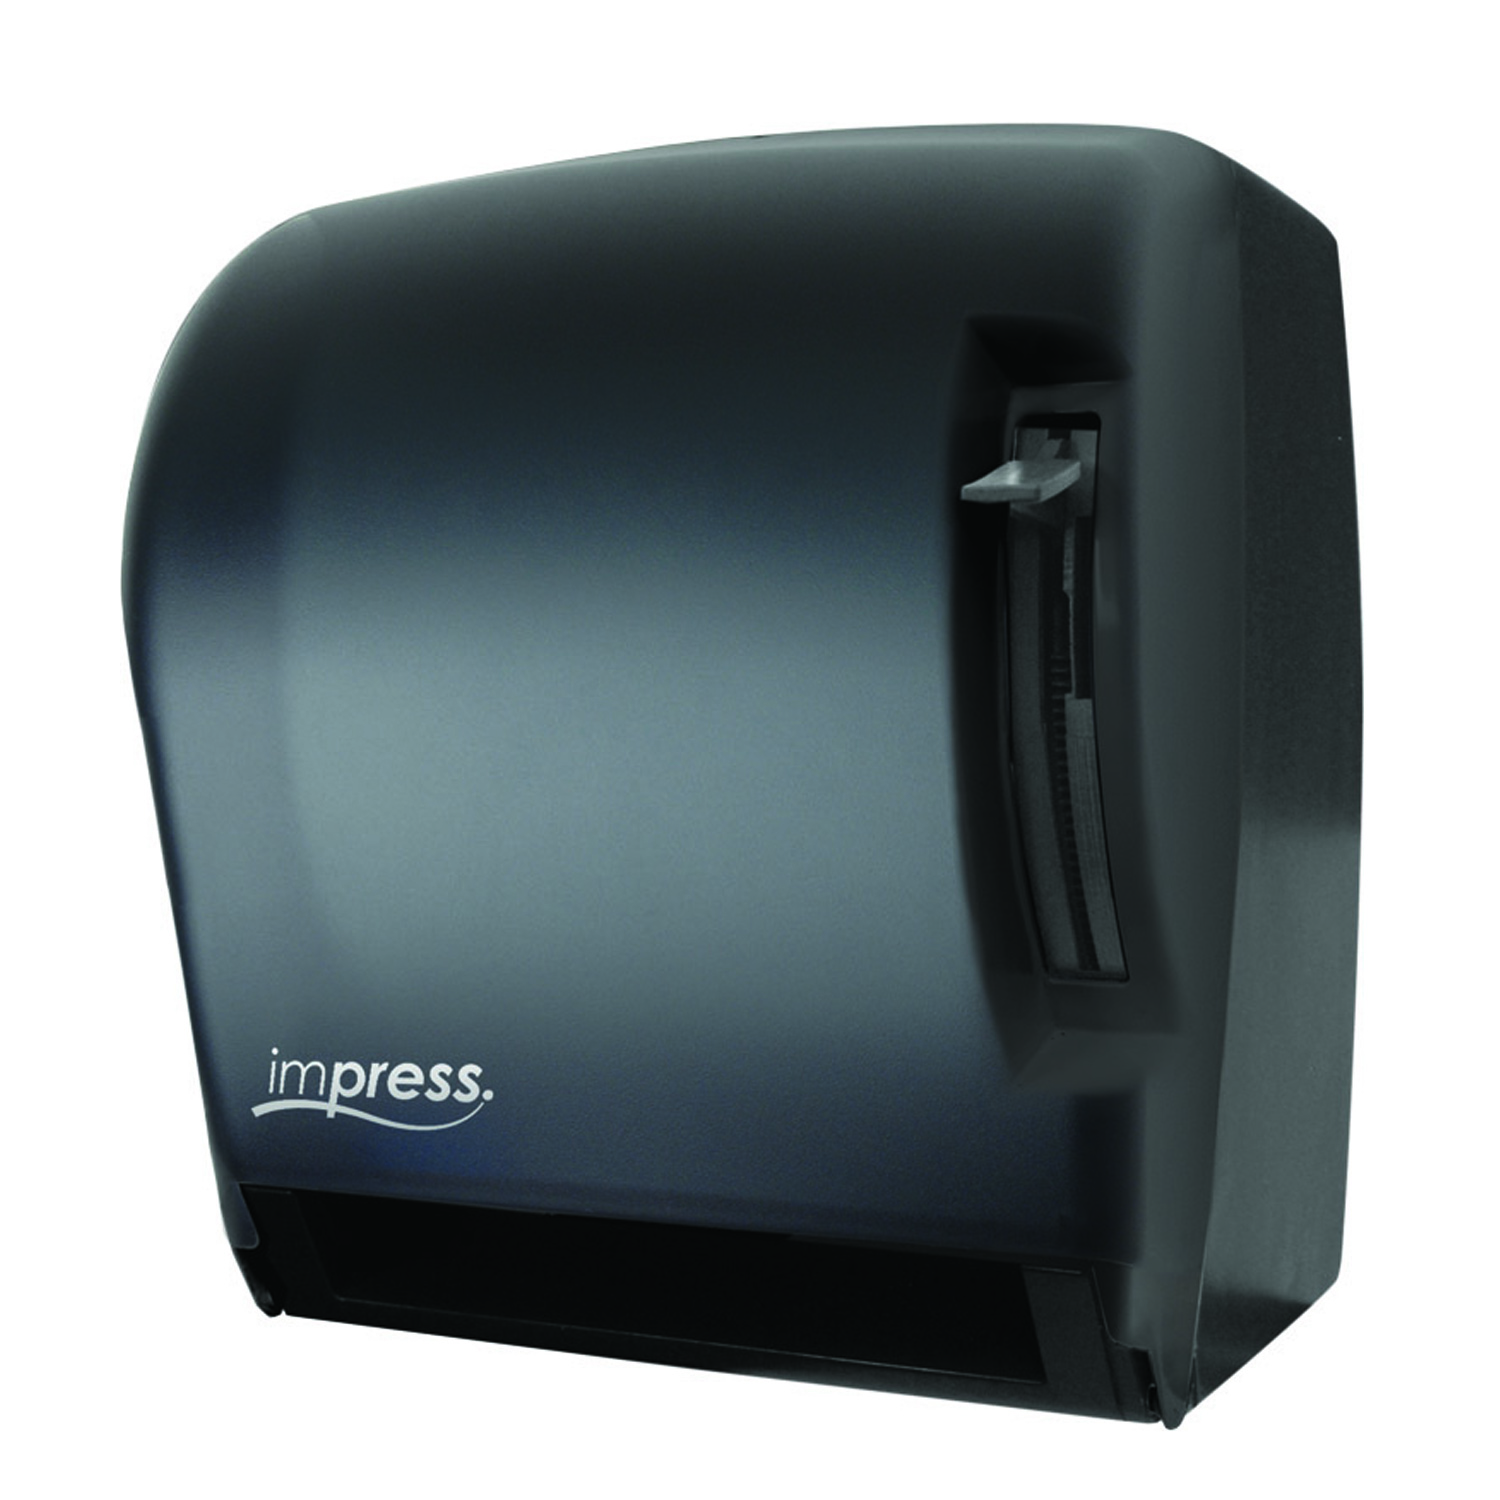 TD0220-02 Black Translucent Impress Lever Roll Towel Dispenser